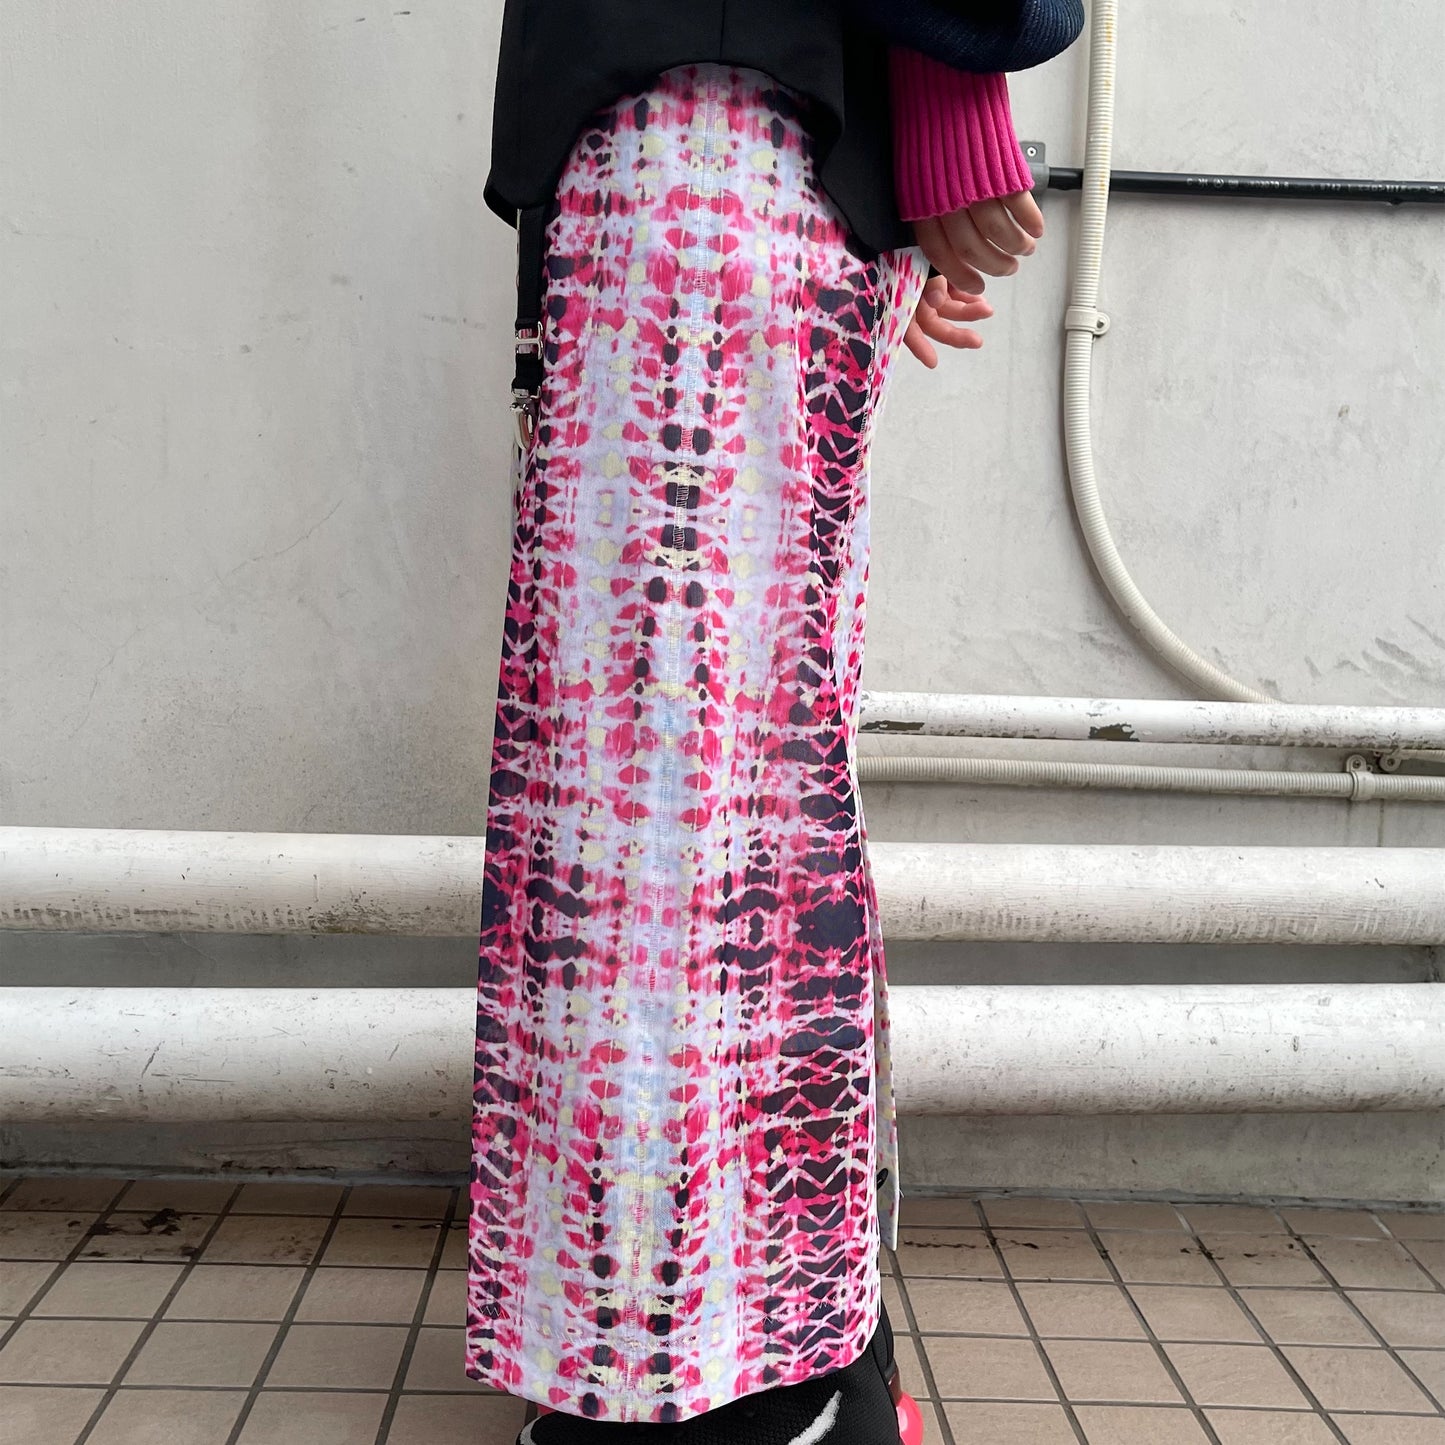 AKIKOAOKI / skirt under the skirt / グラフィック